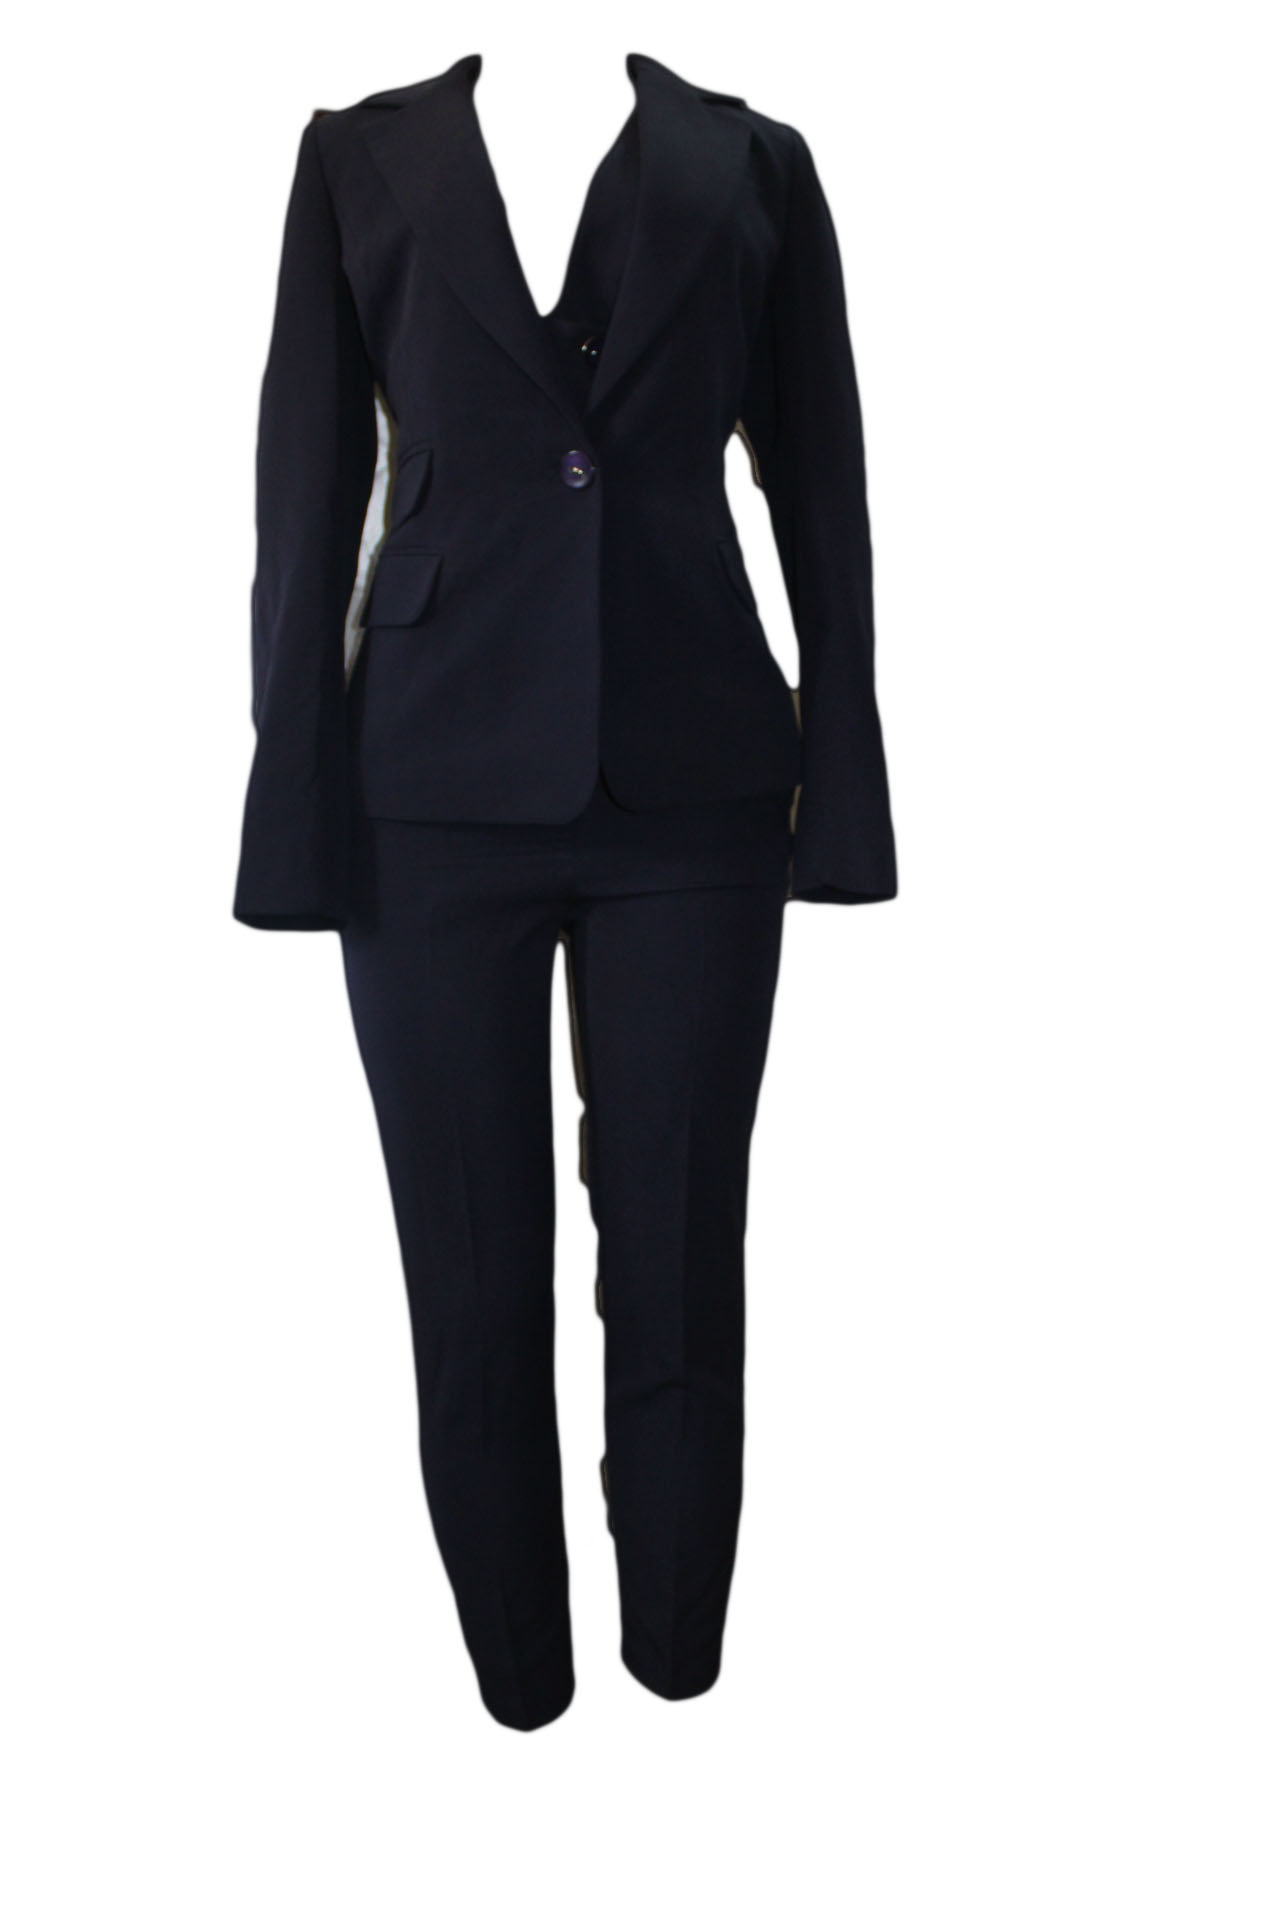 Women's 2 Pieces Office Blazer Suit Slim Fit